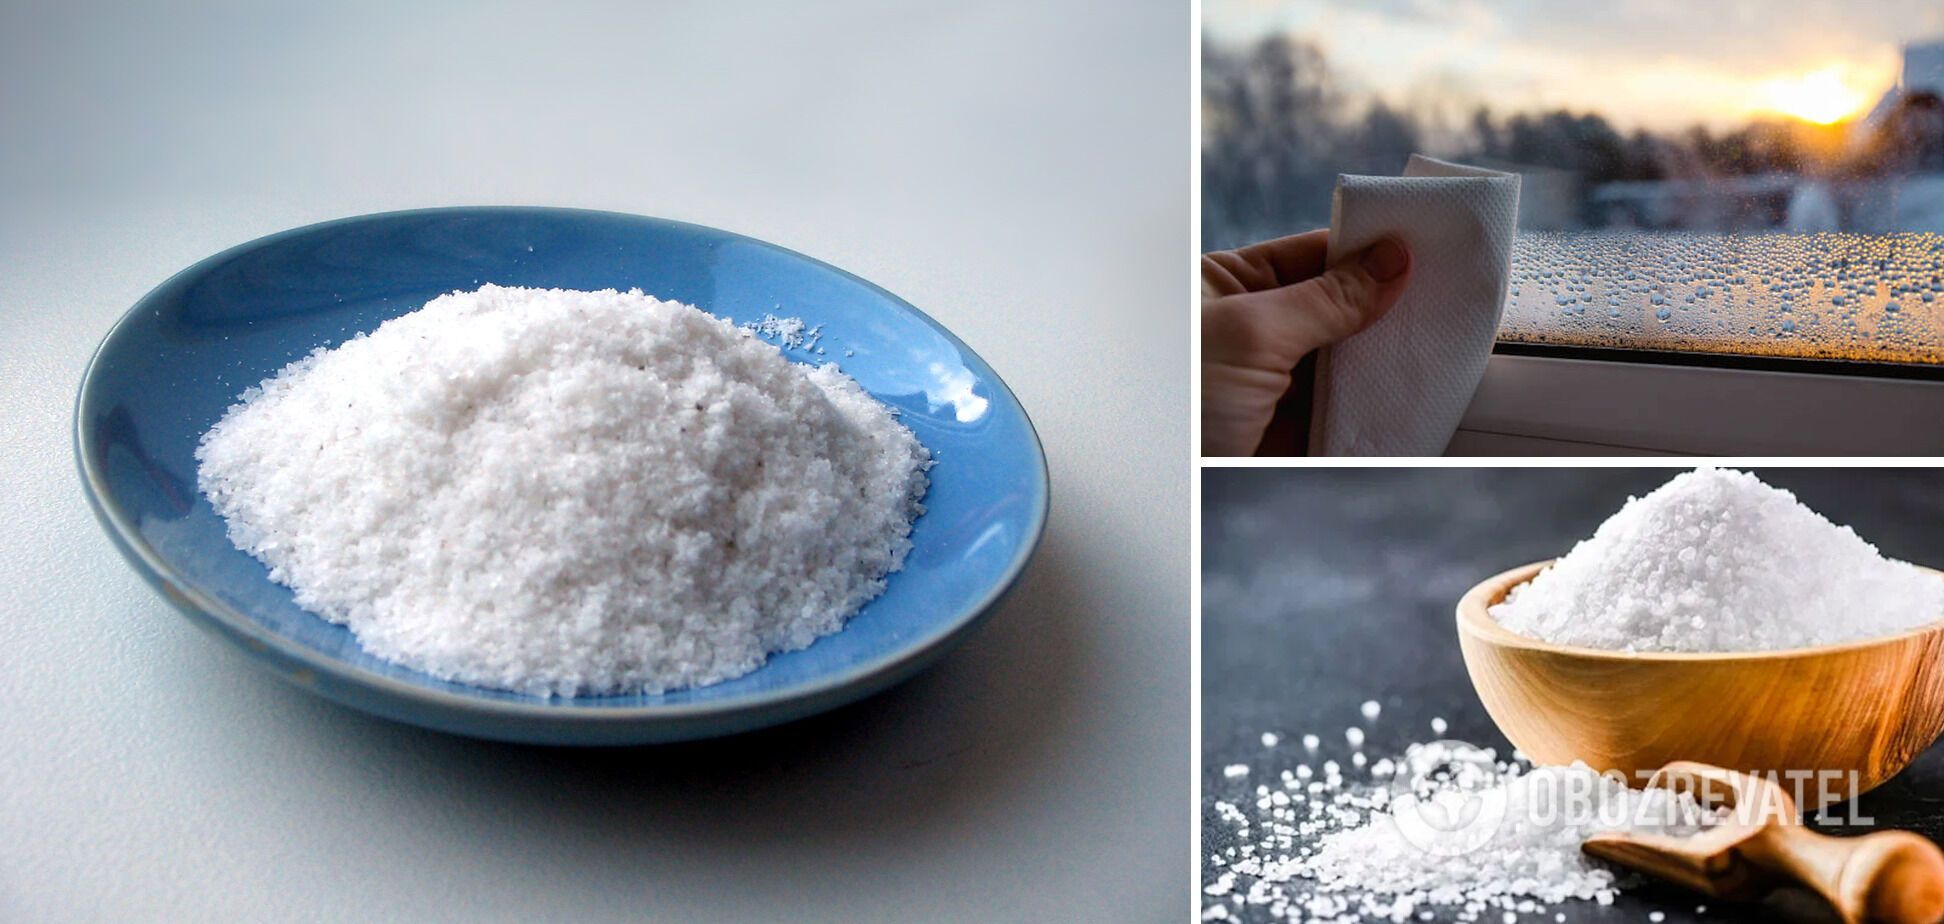 Зачем хозяйки ставят соль на подоконник: суеверия ни к чему